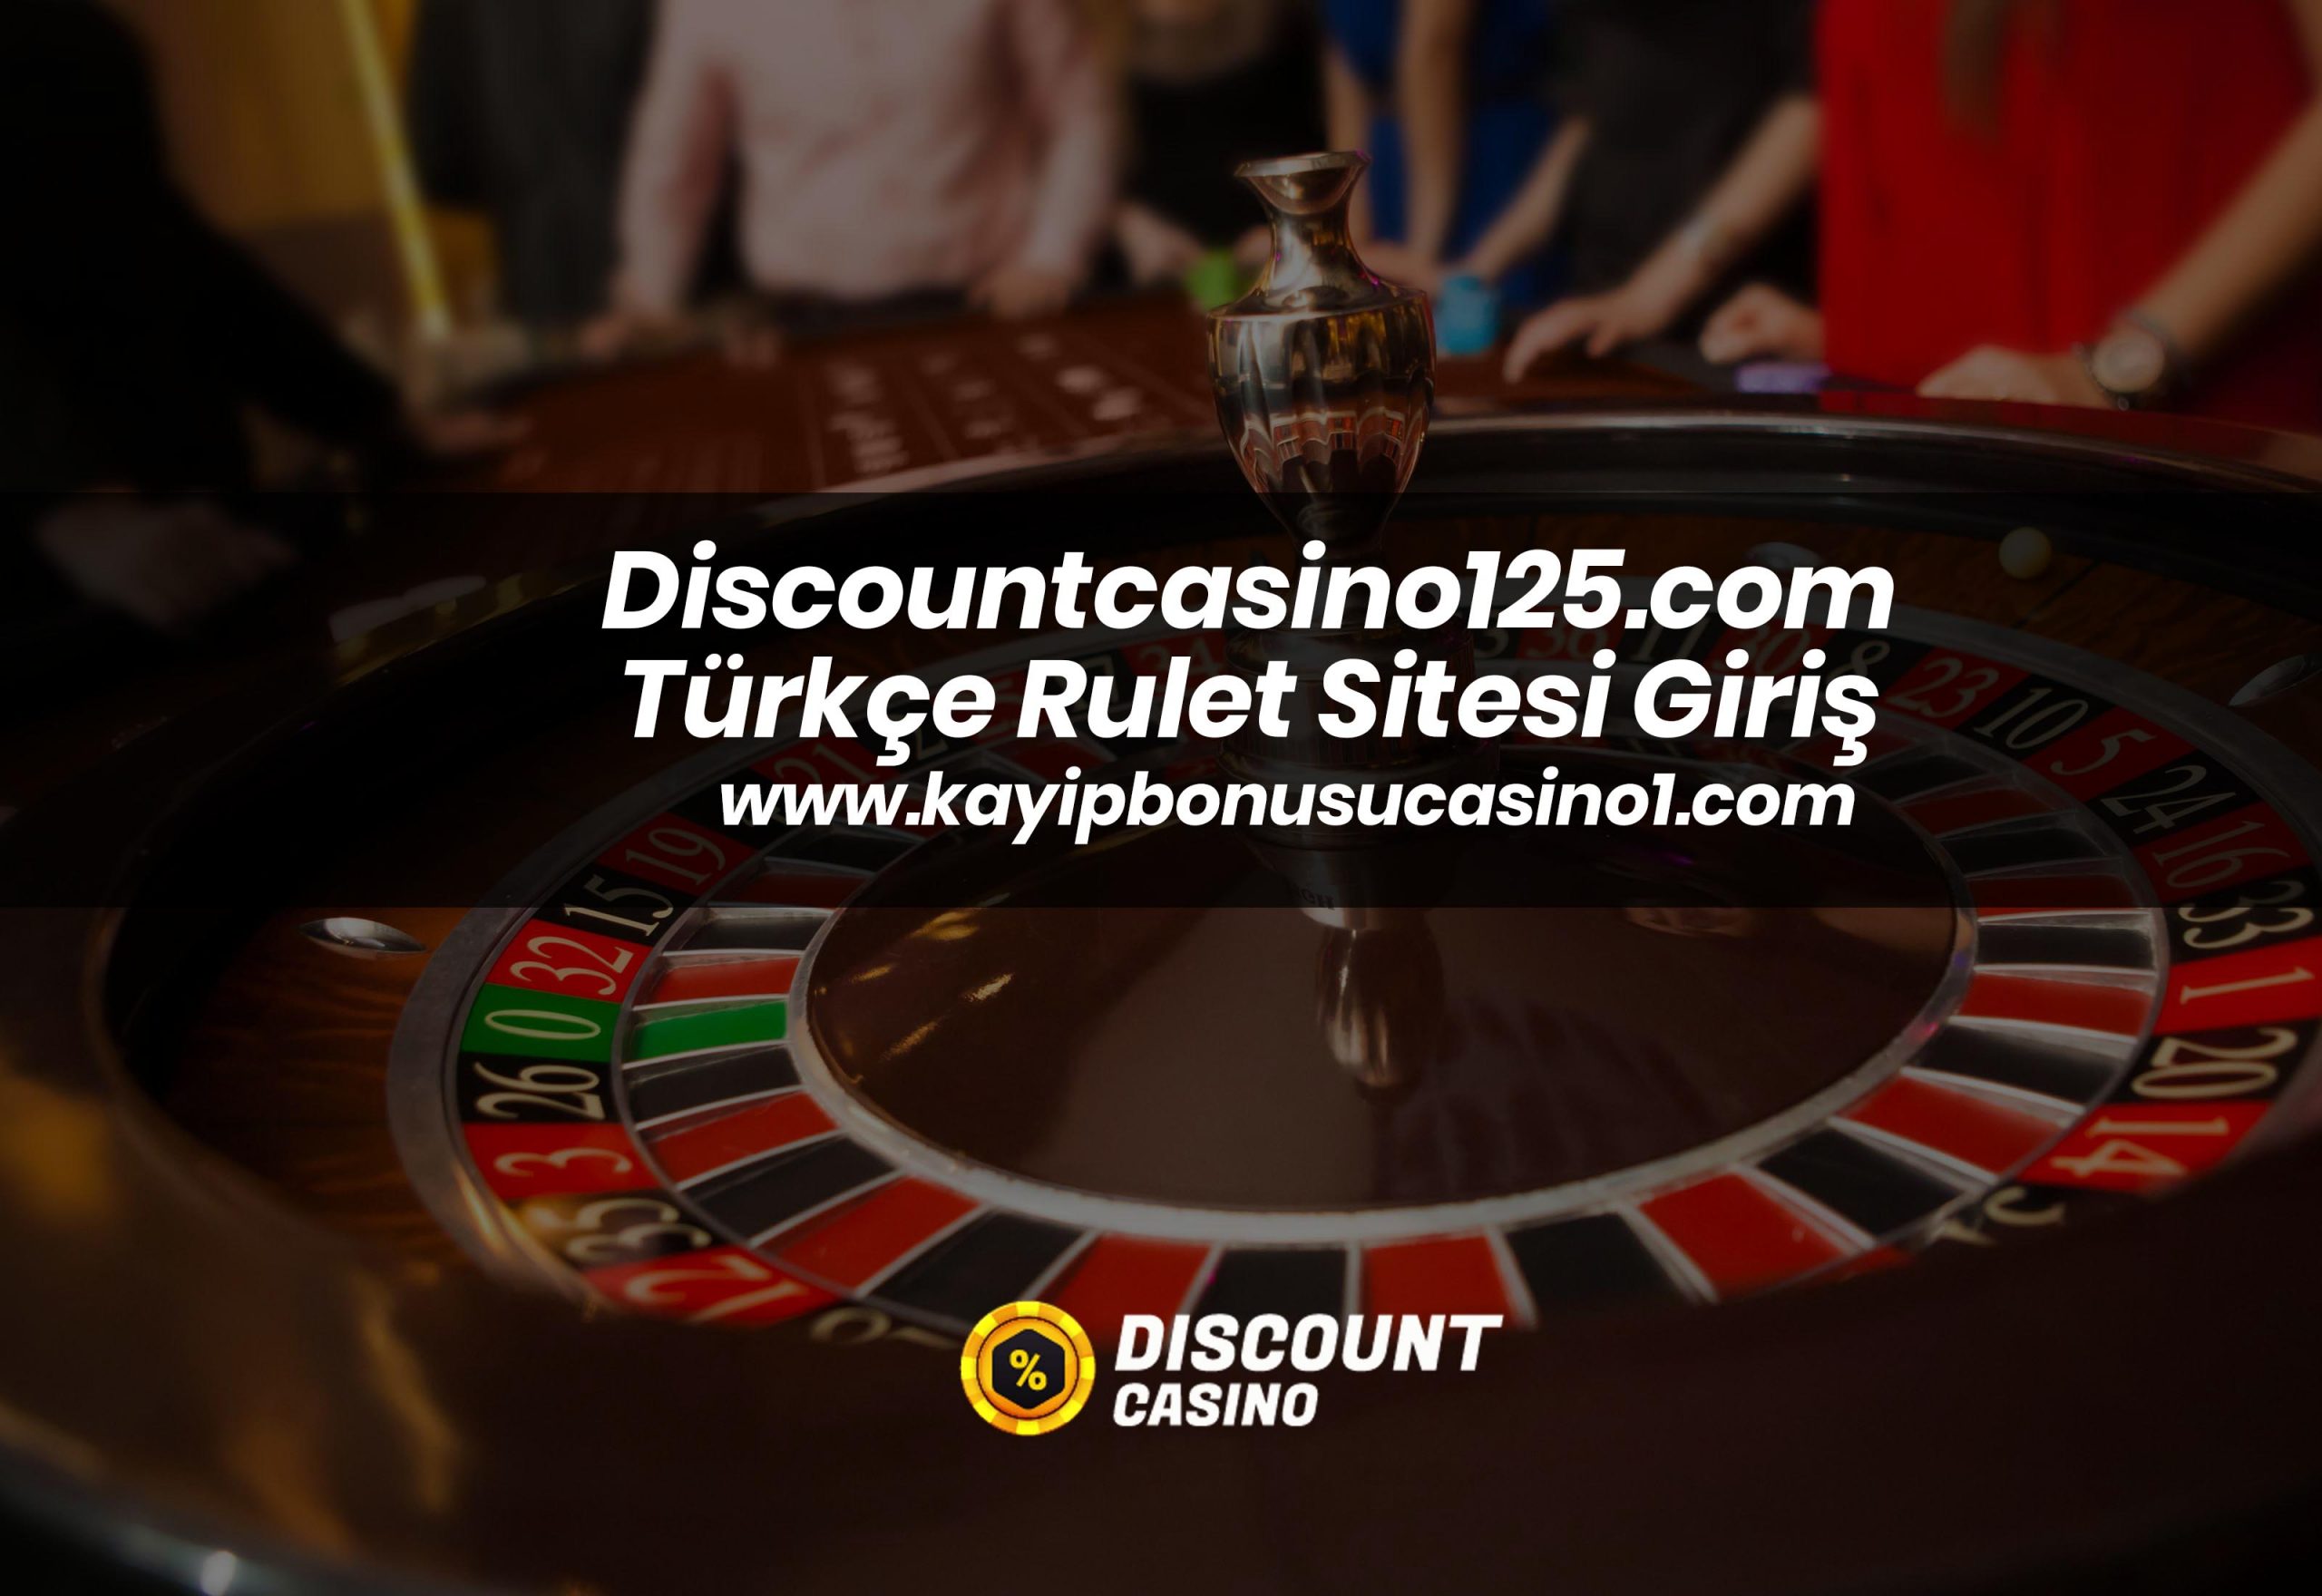 Discountcasino125.com Türkçe Rulet Sitesi Giriş